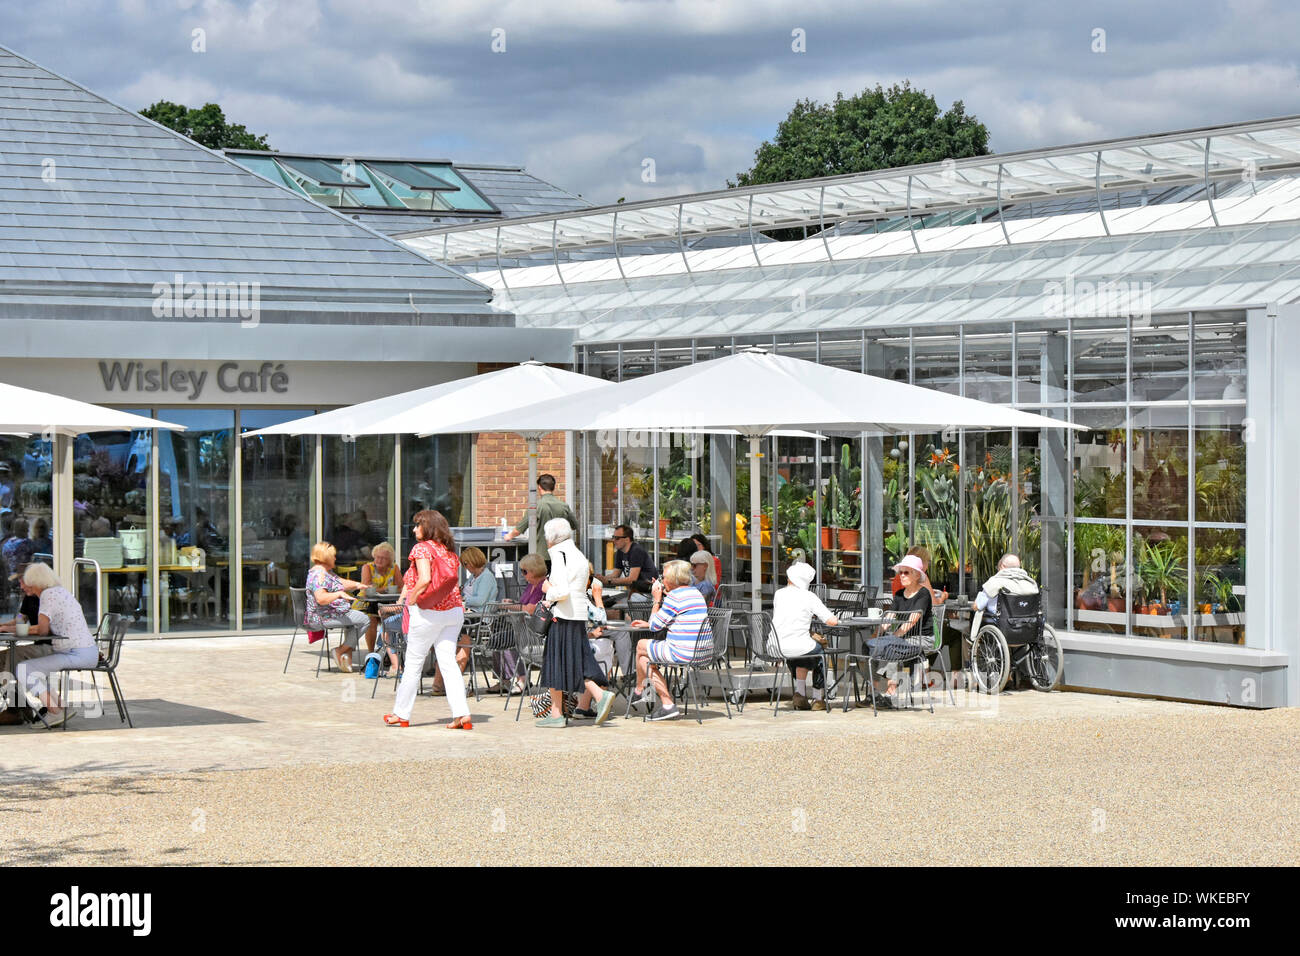 RHS Wisley Leute an neuen, modernen Cafe Gebäude Sonnenschirm Schatten & outdoor Tische neben Pflanzen shop Royal Horticultural Society Gärten Surrey England Großbritannien Stockfoto